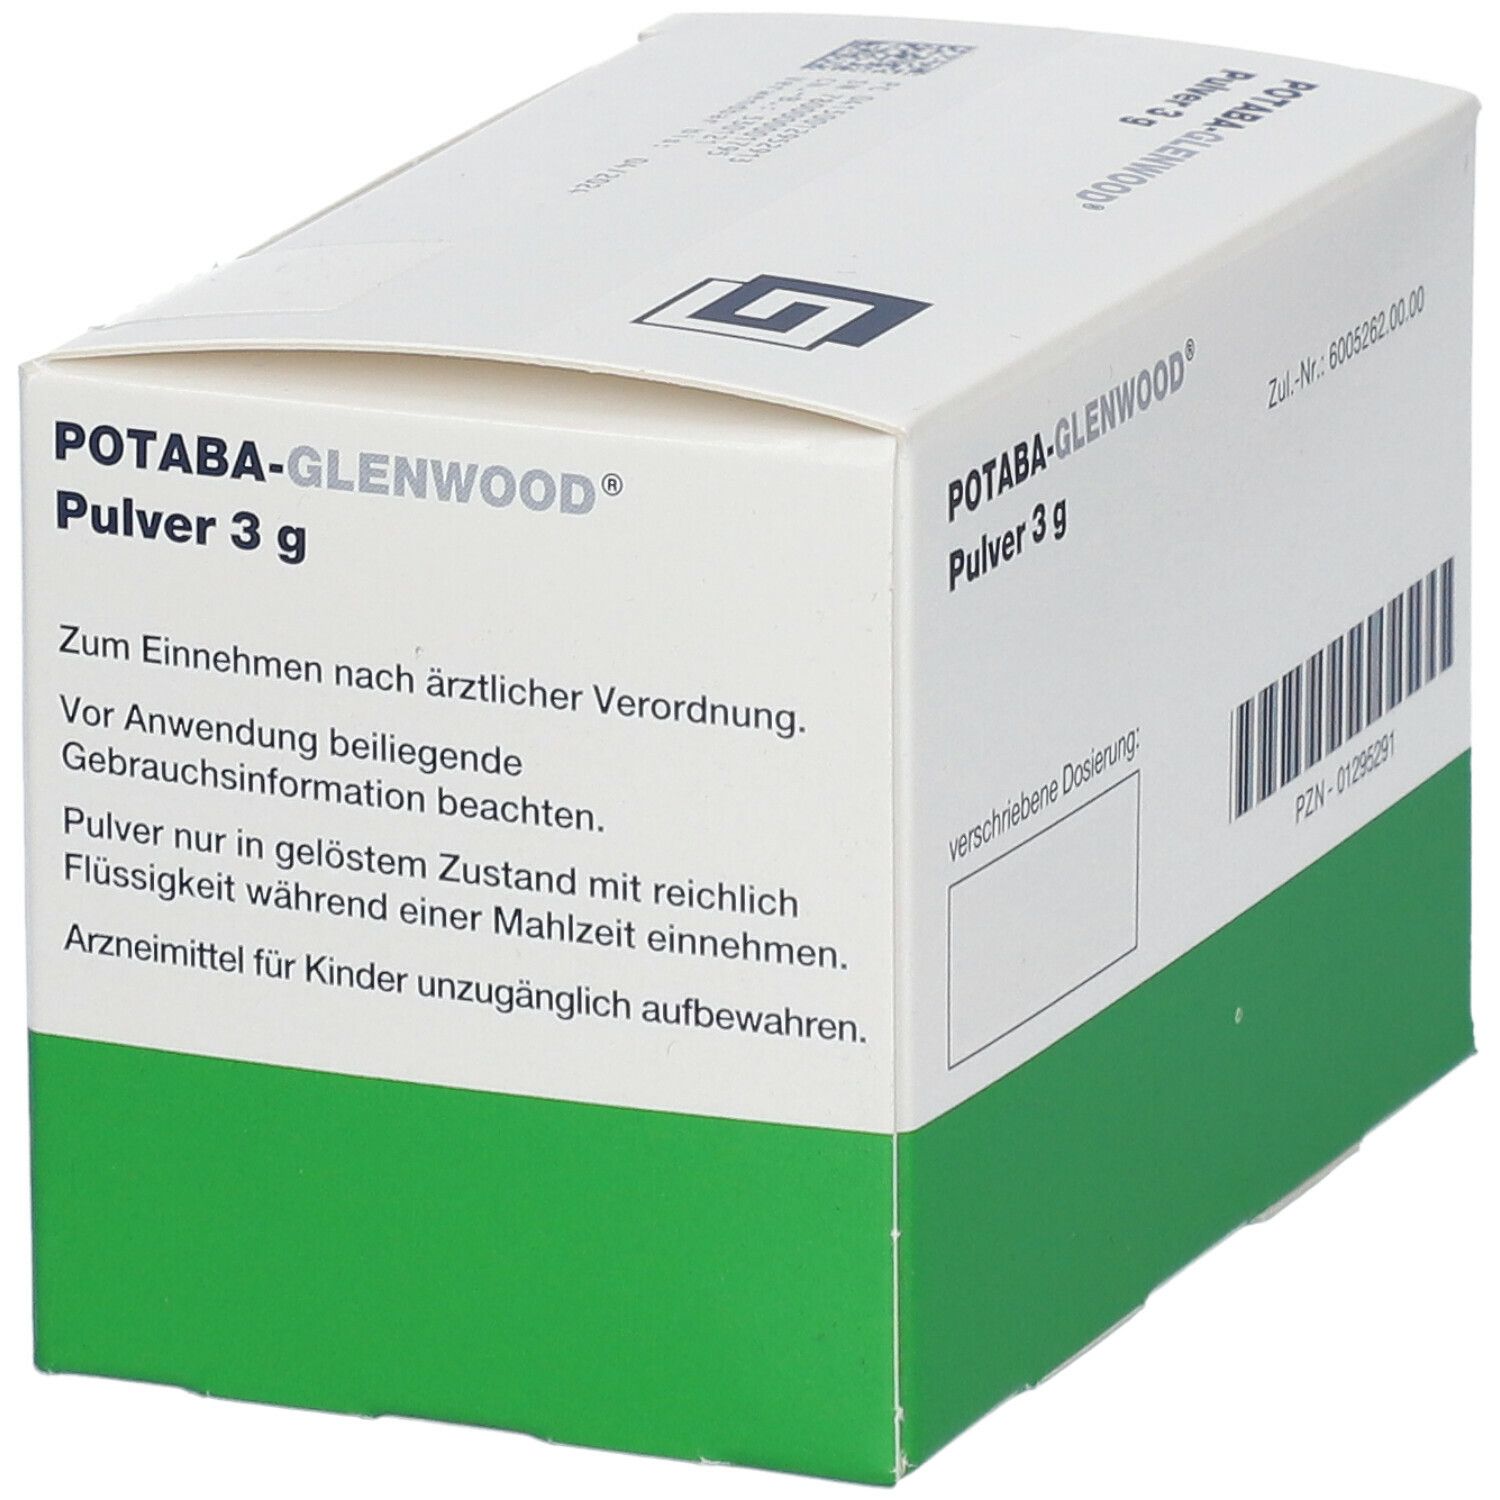 Potaba-Glenwood® Pulver 3 g